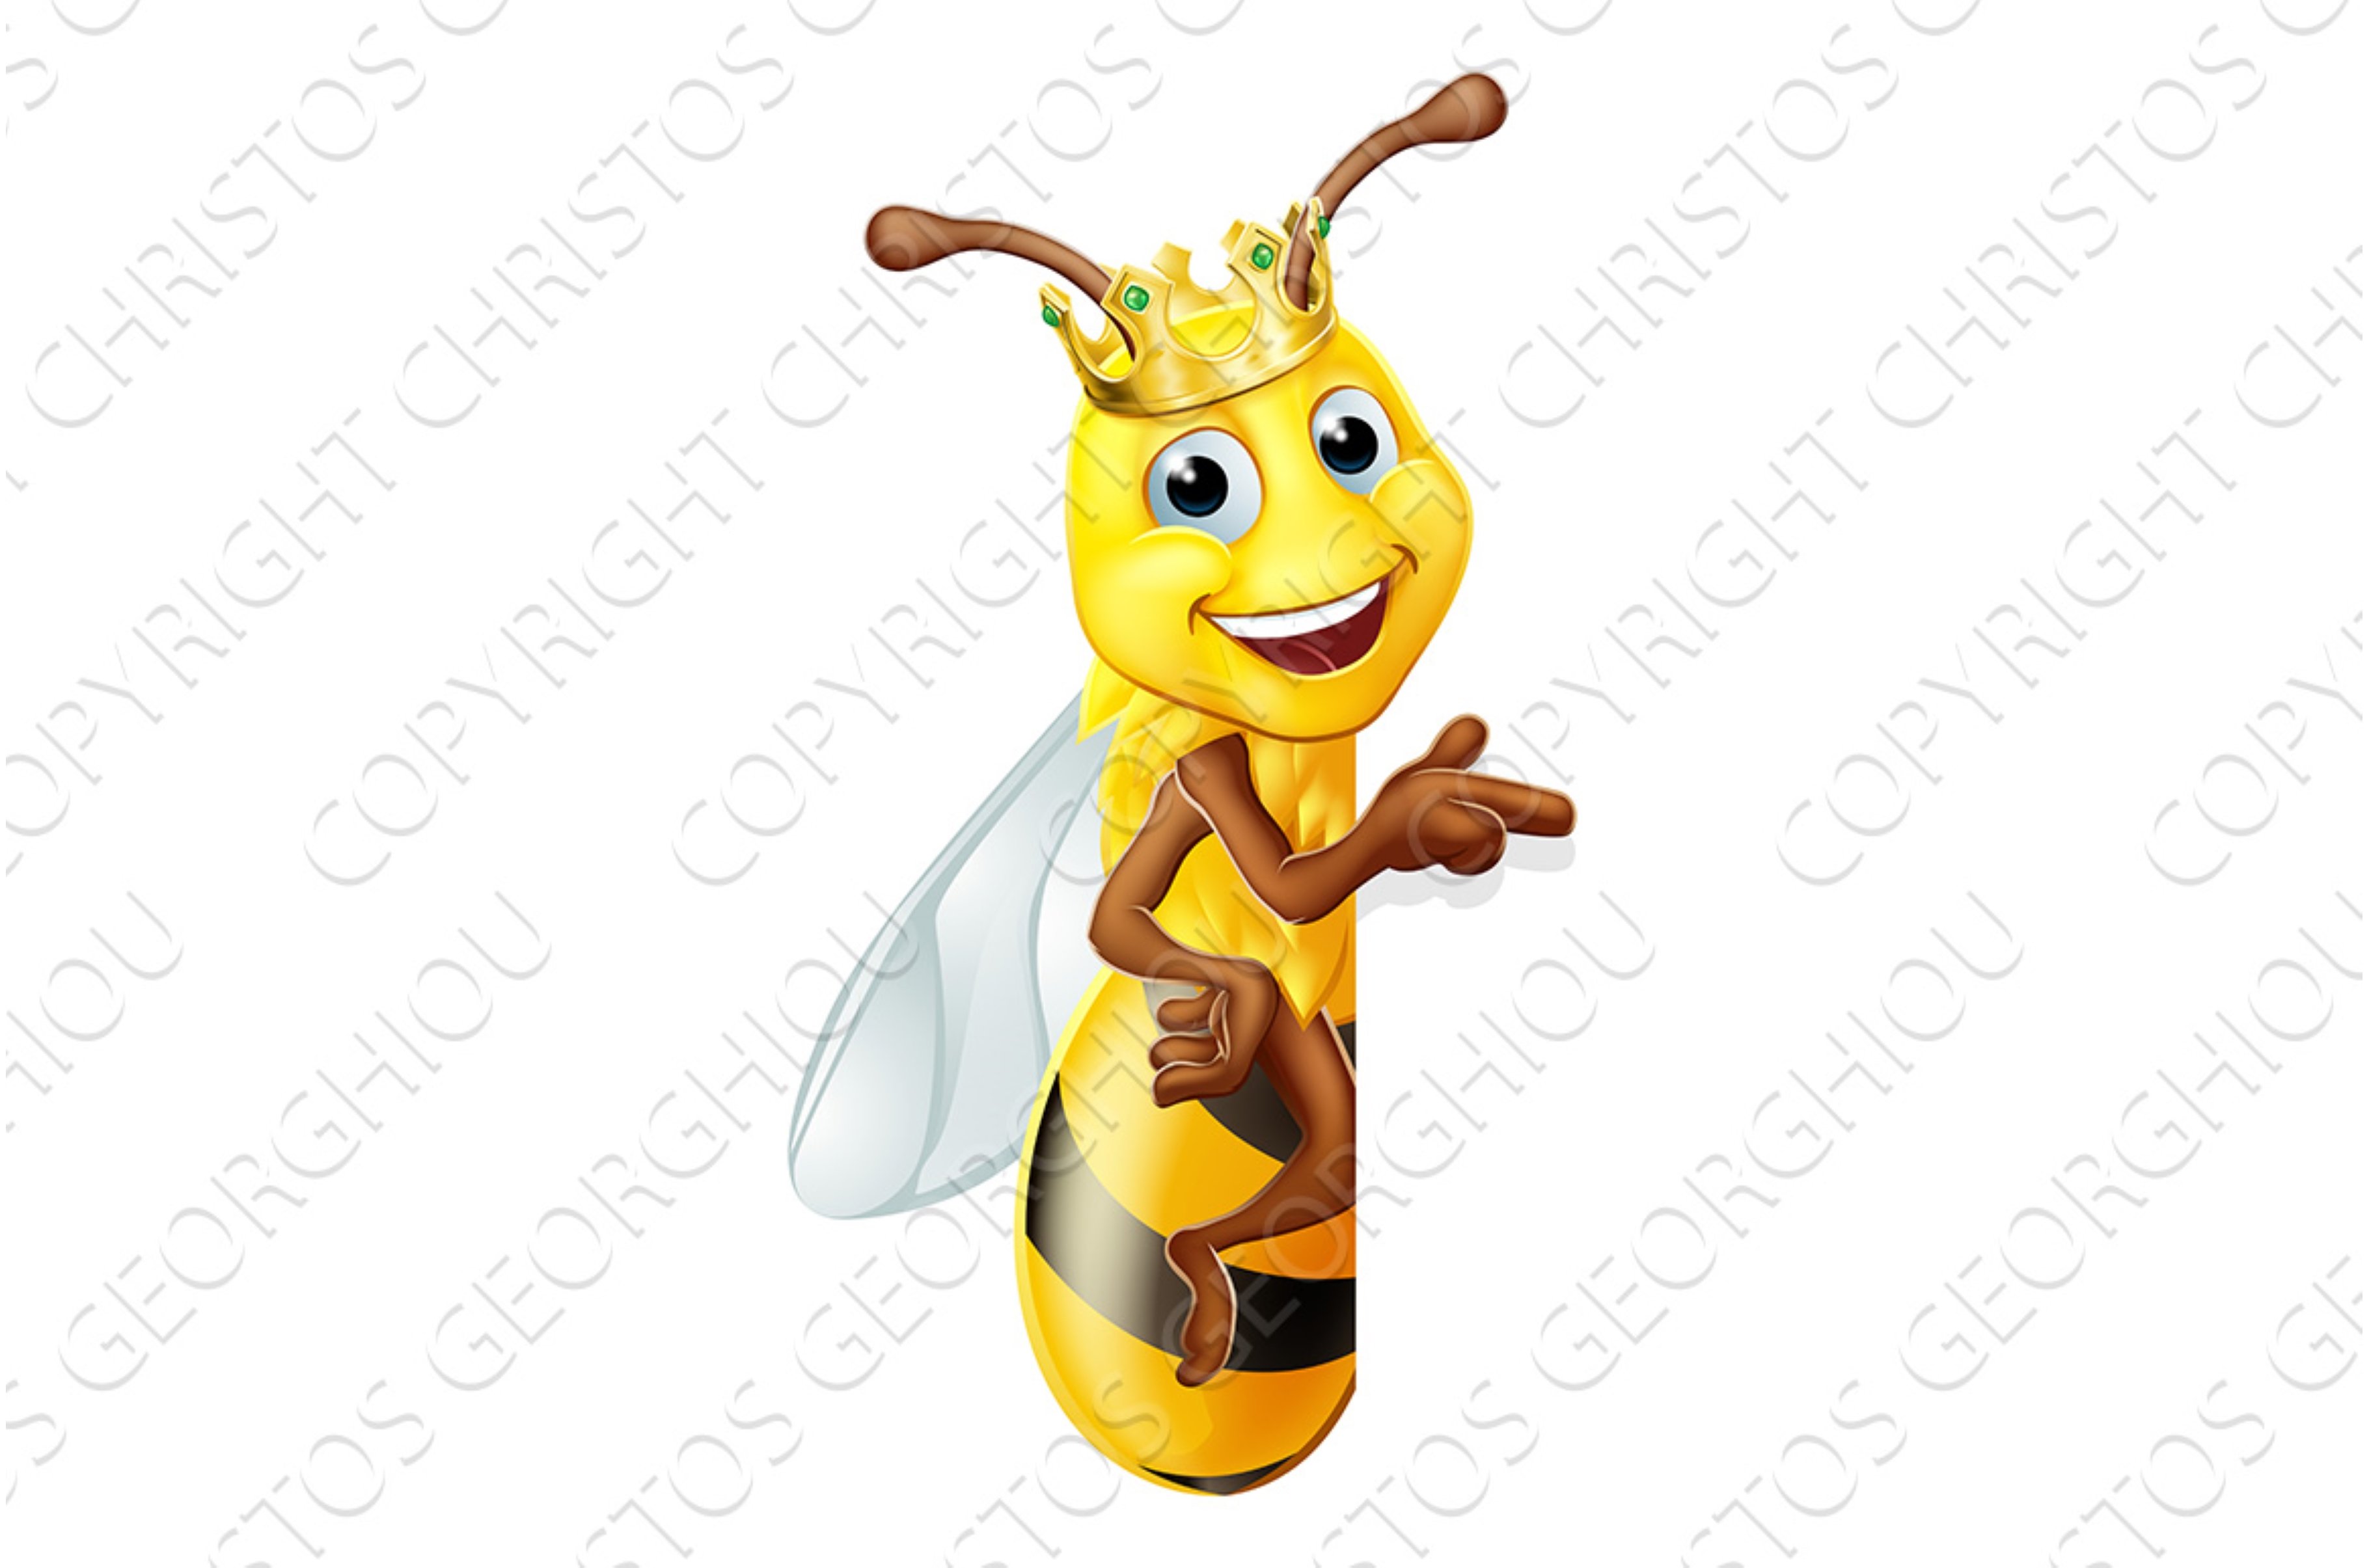 Queen Honey Bumble Bee Bumblebee in cover image.